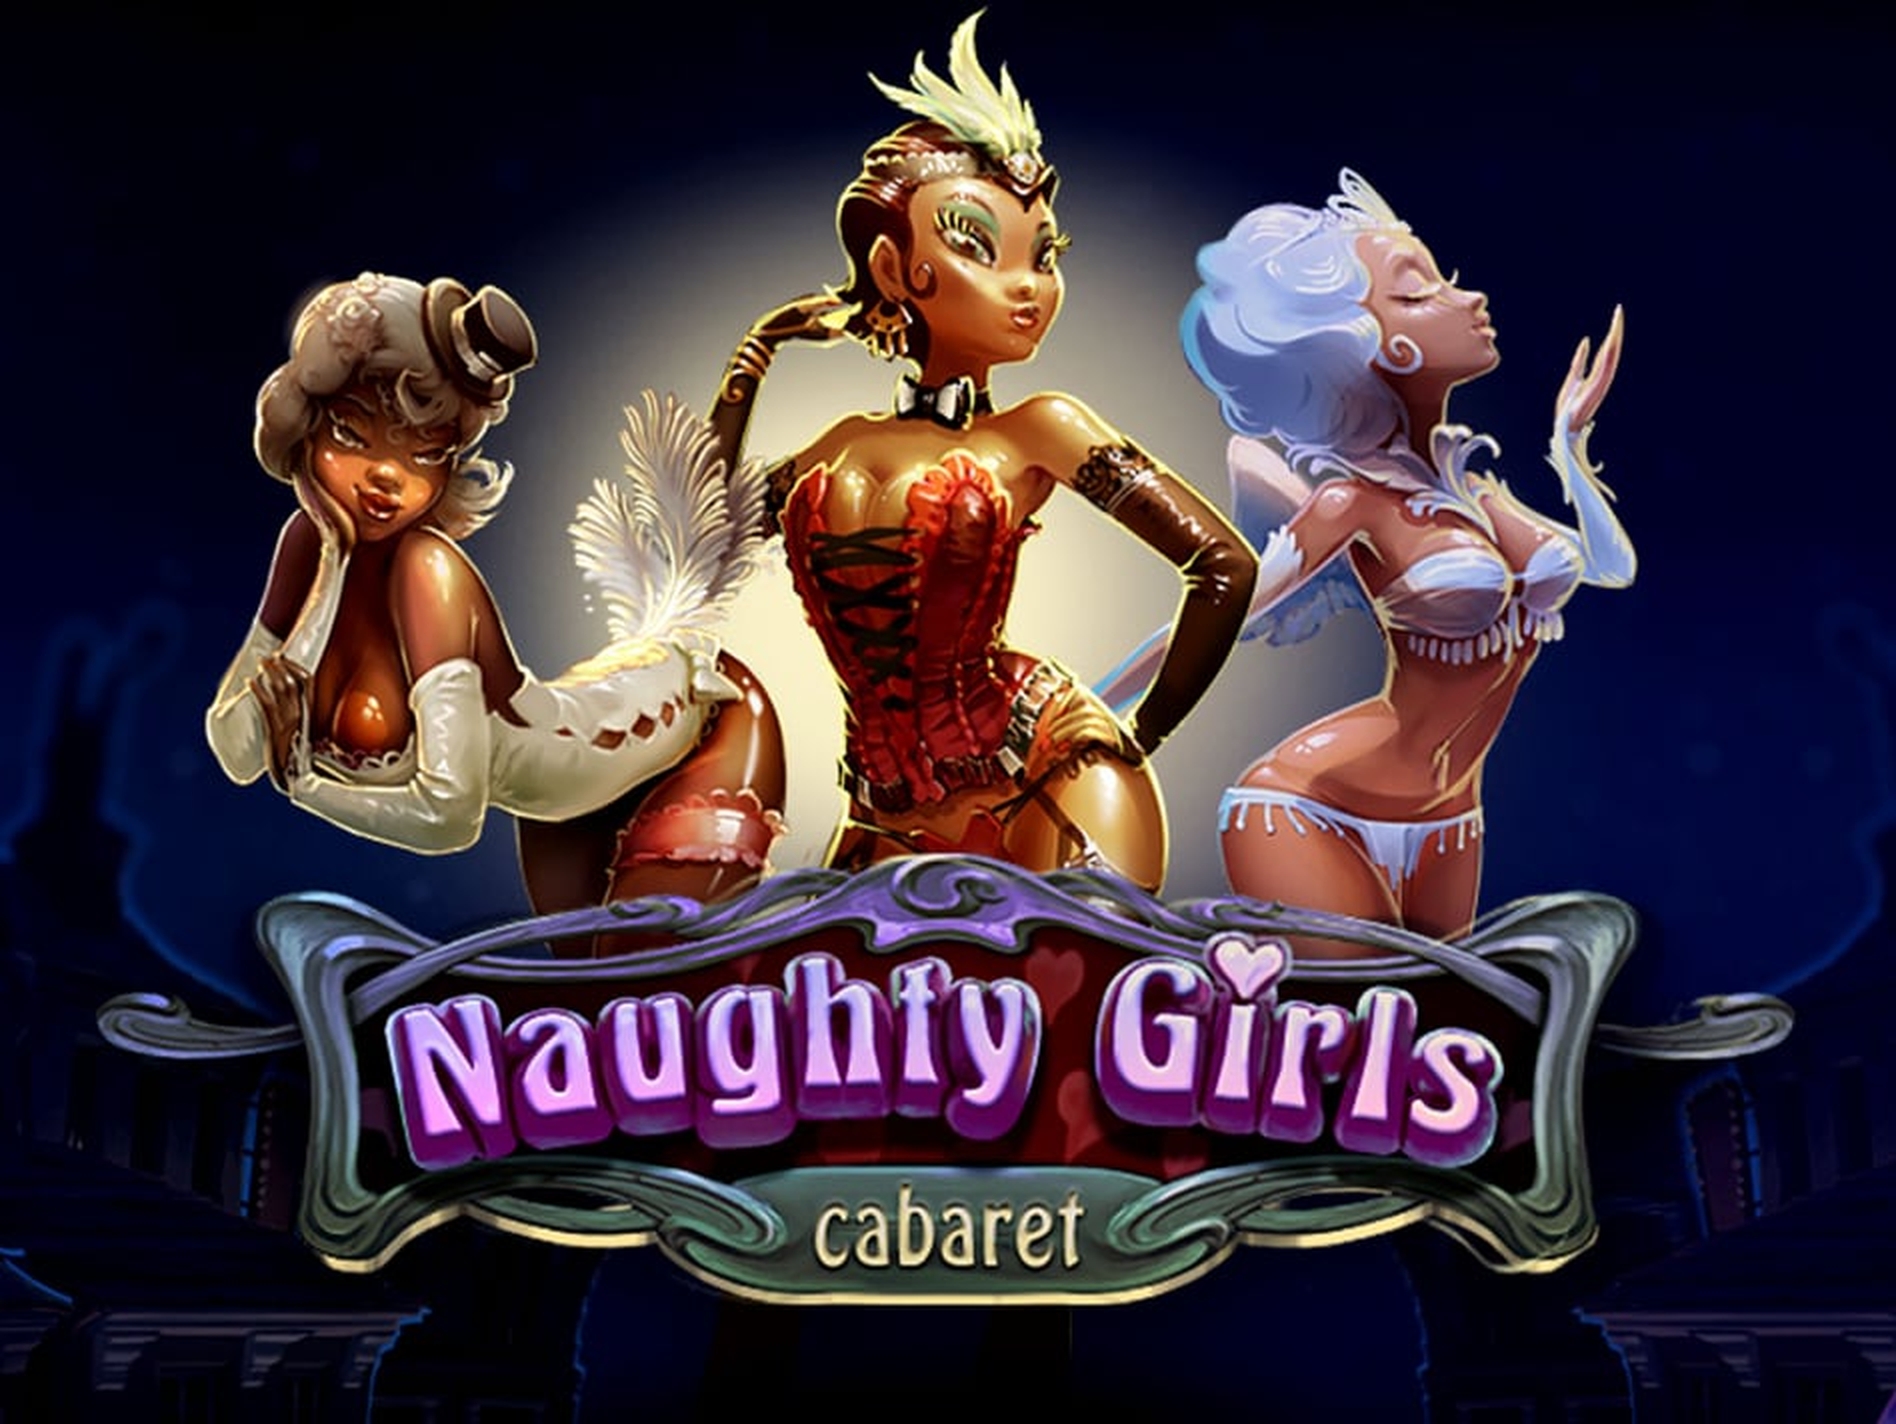 Naughty Girls Cabaret demo